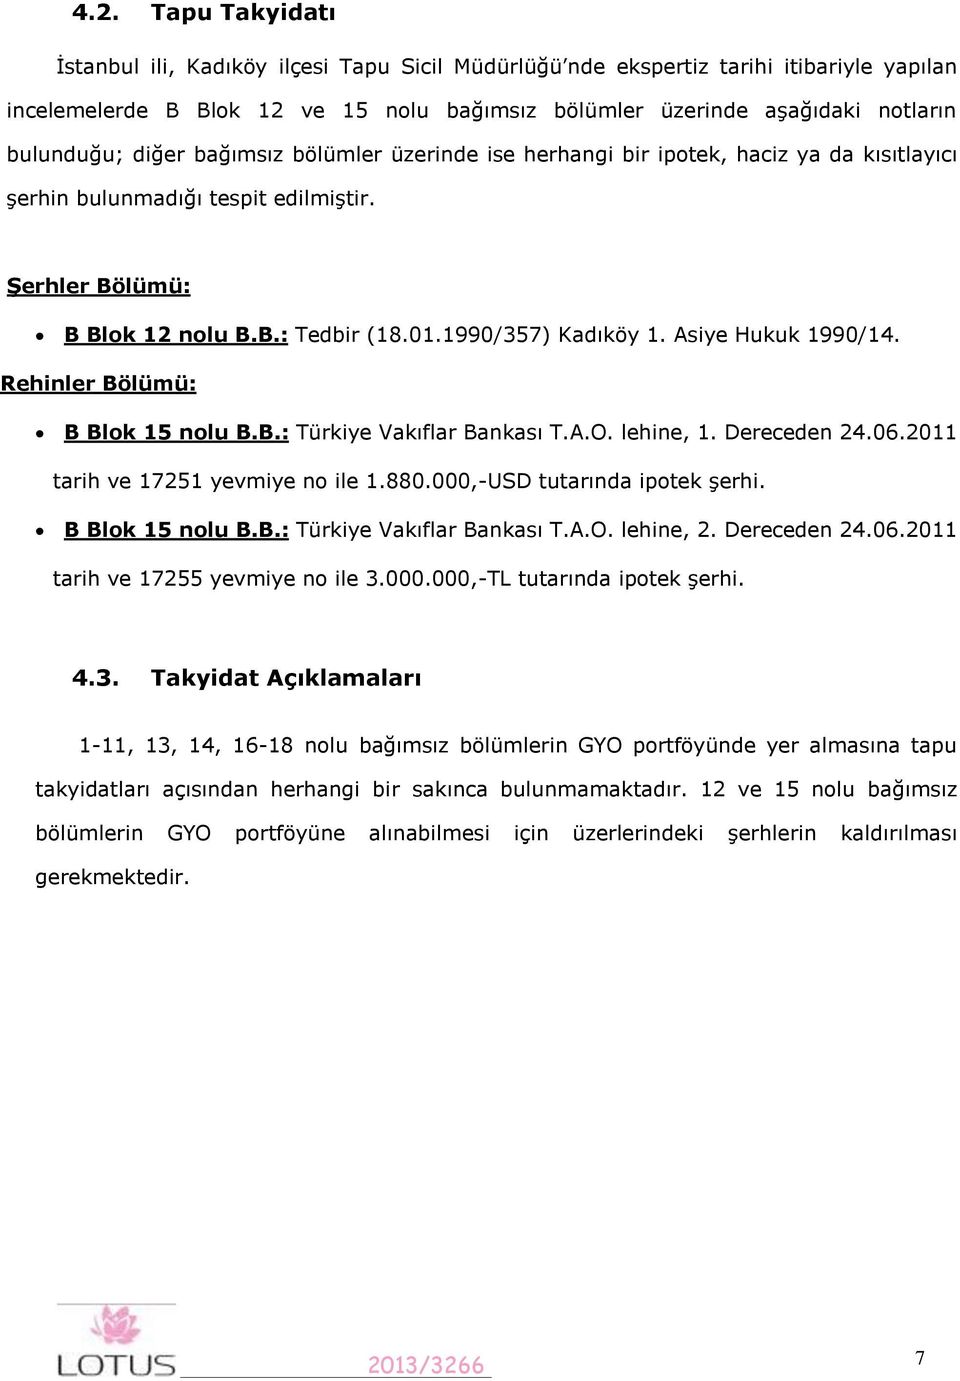 1990/357) Kadıköy 1. Asiye Hukuk 1990/14. Rehinler Bölümü: B Blok 15 nolu B.B.: Türkiye Vakıflar Bankası T.A.O. lehine, 1. Dereceden 24.06.2011 tarih ve 17251 yevmiye no ile 1.880.